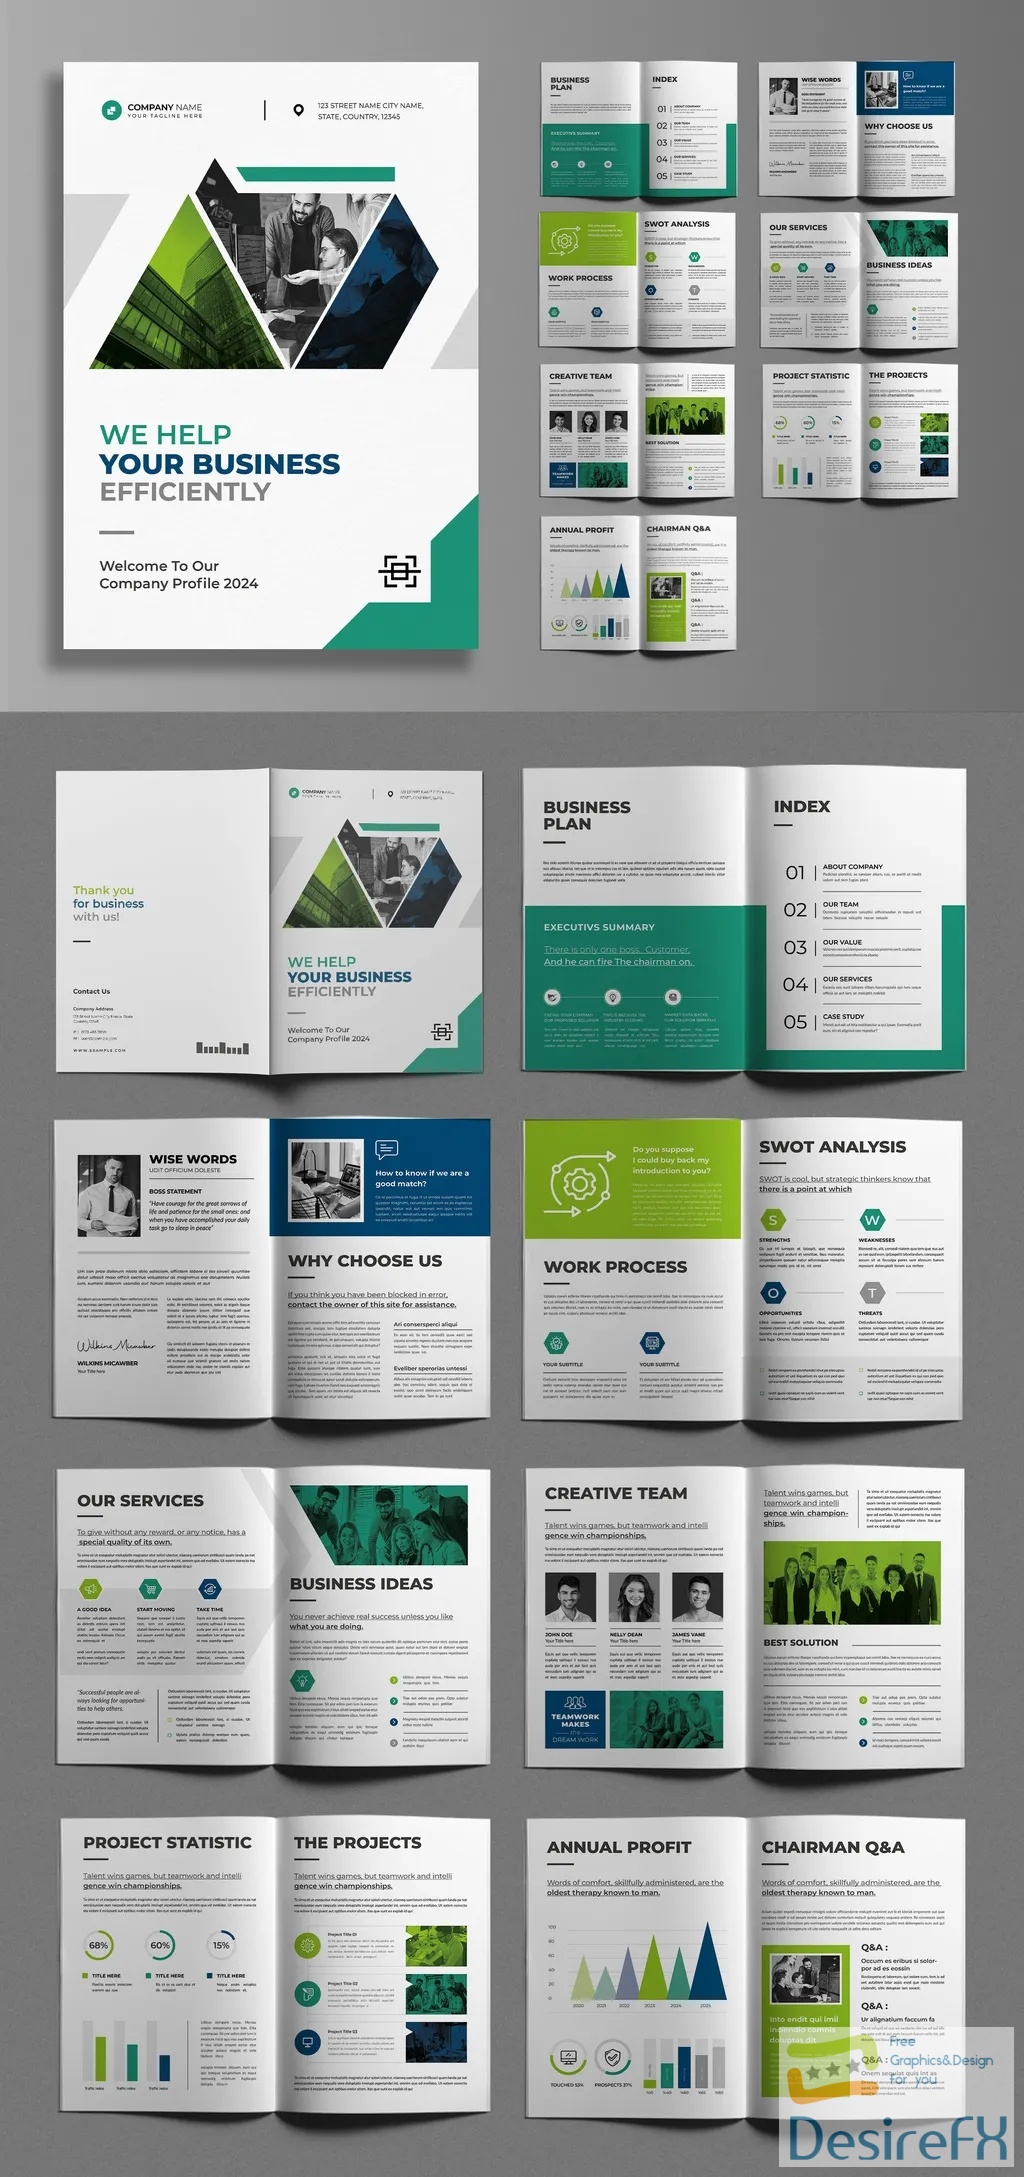 Adobestock - Corporate Brochure Template 718538230